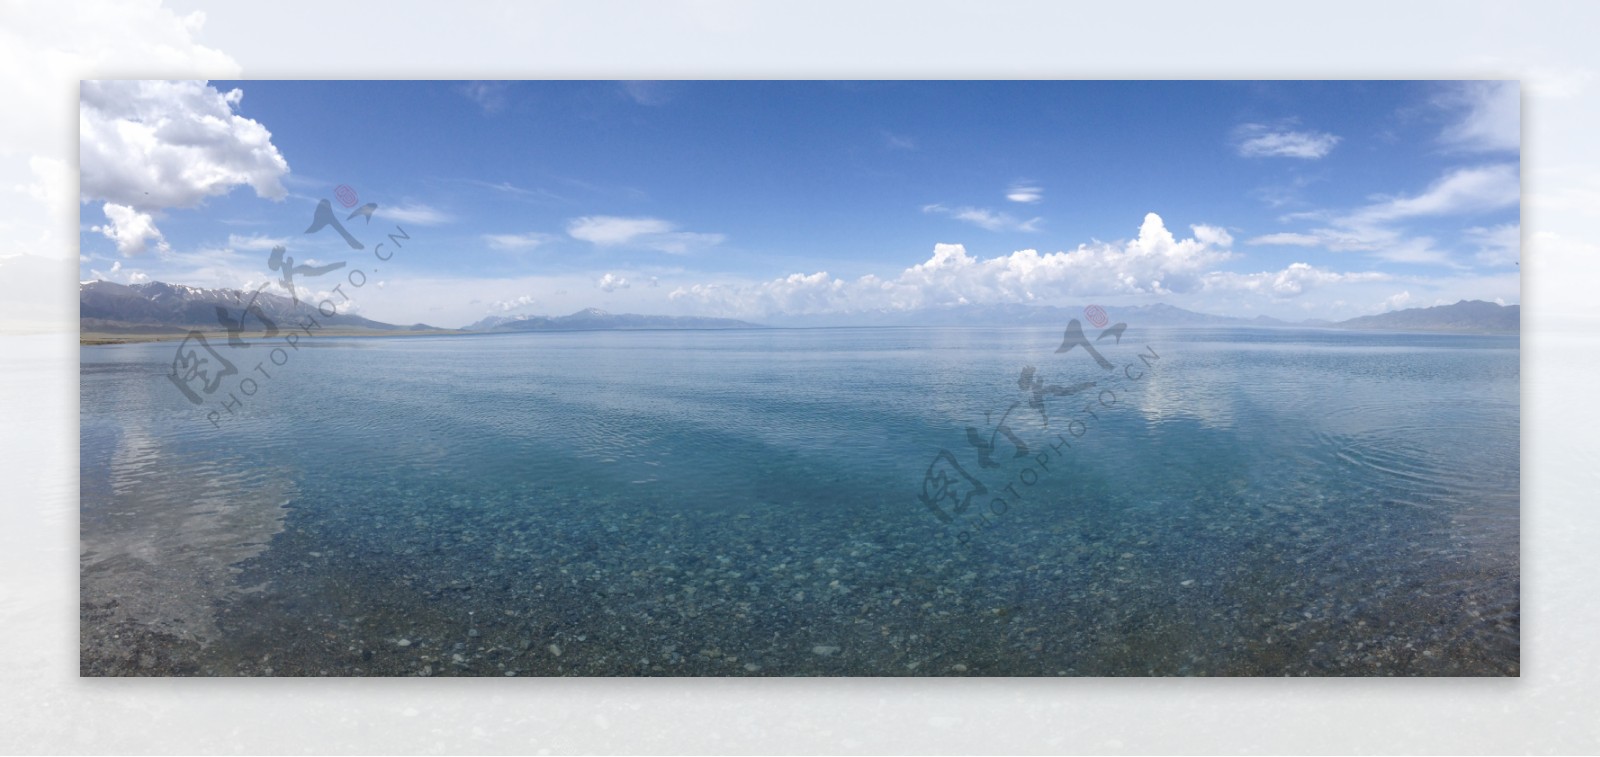 赛里木湖图片